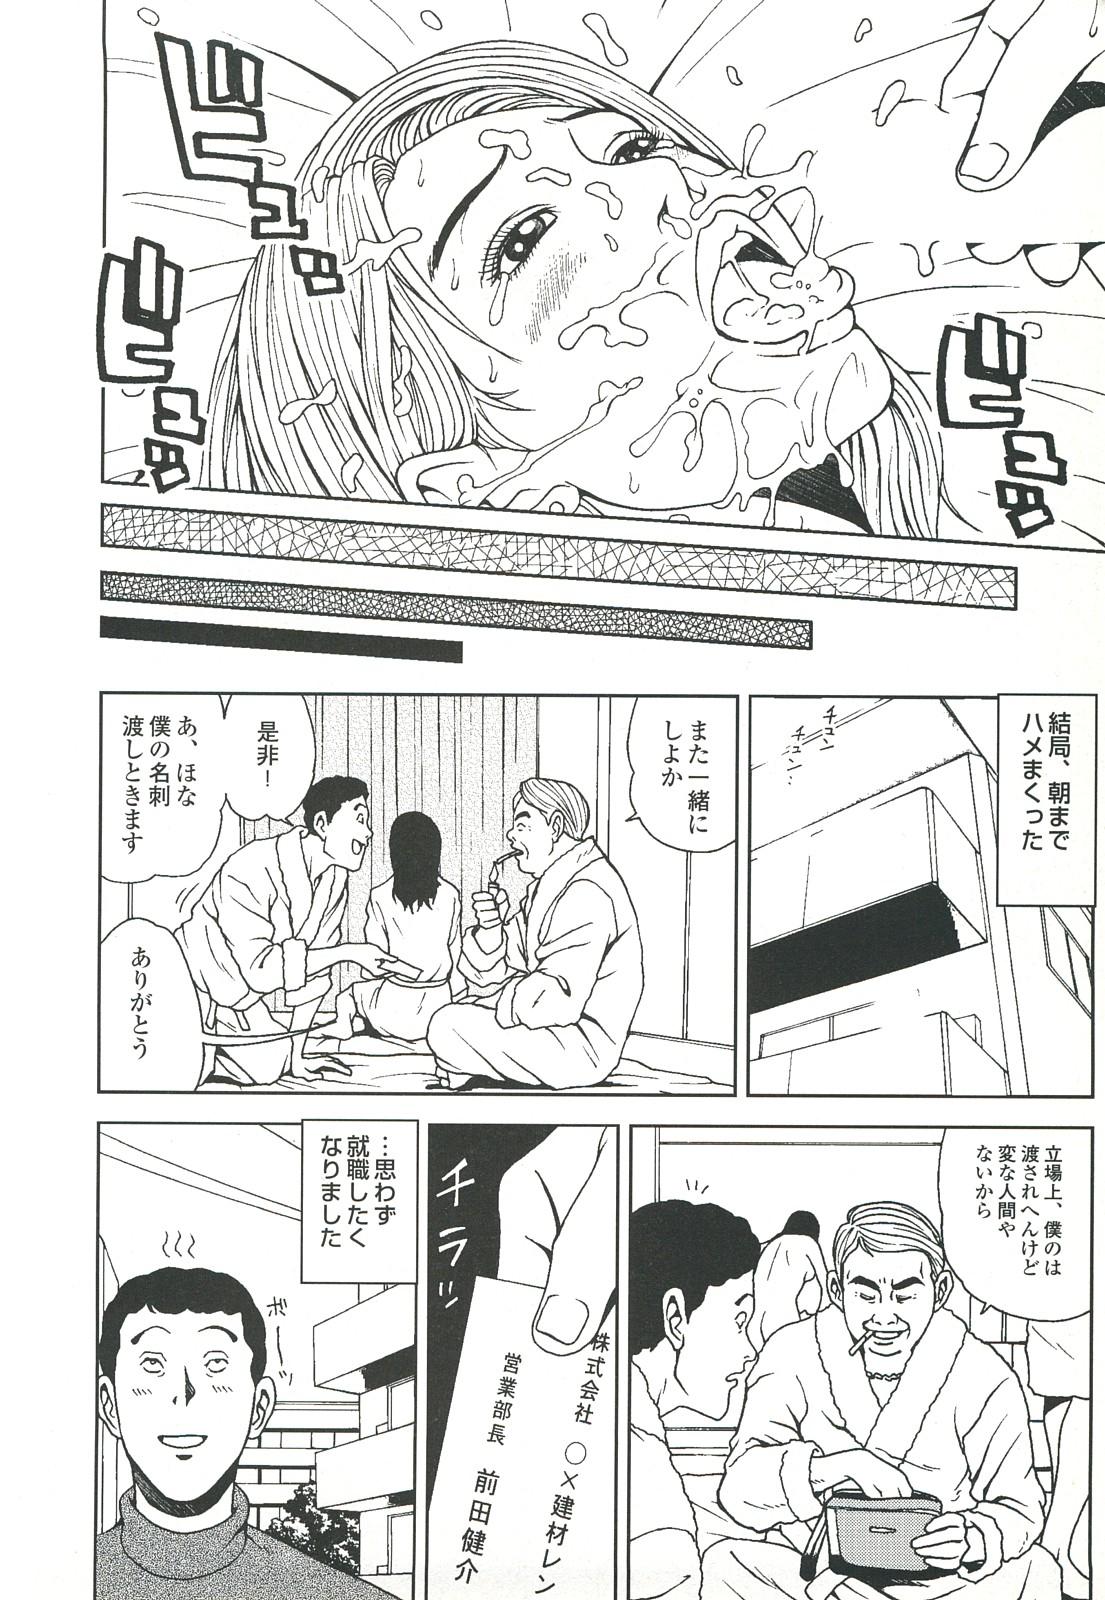 コミック裏モノJAPAN Vol.18 今井のりたつスペシャル号 73